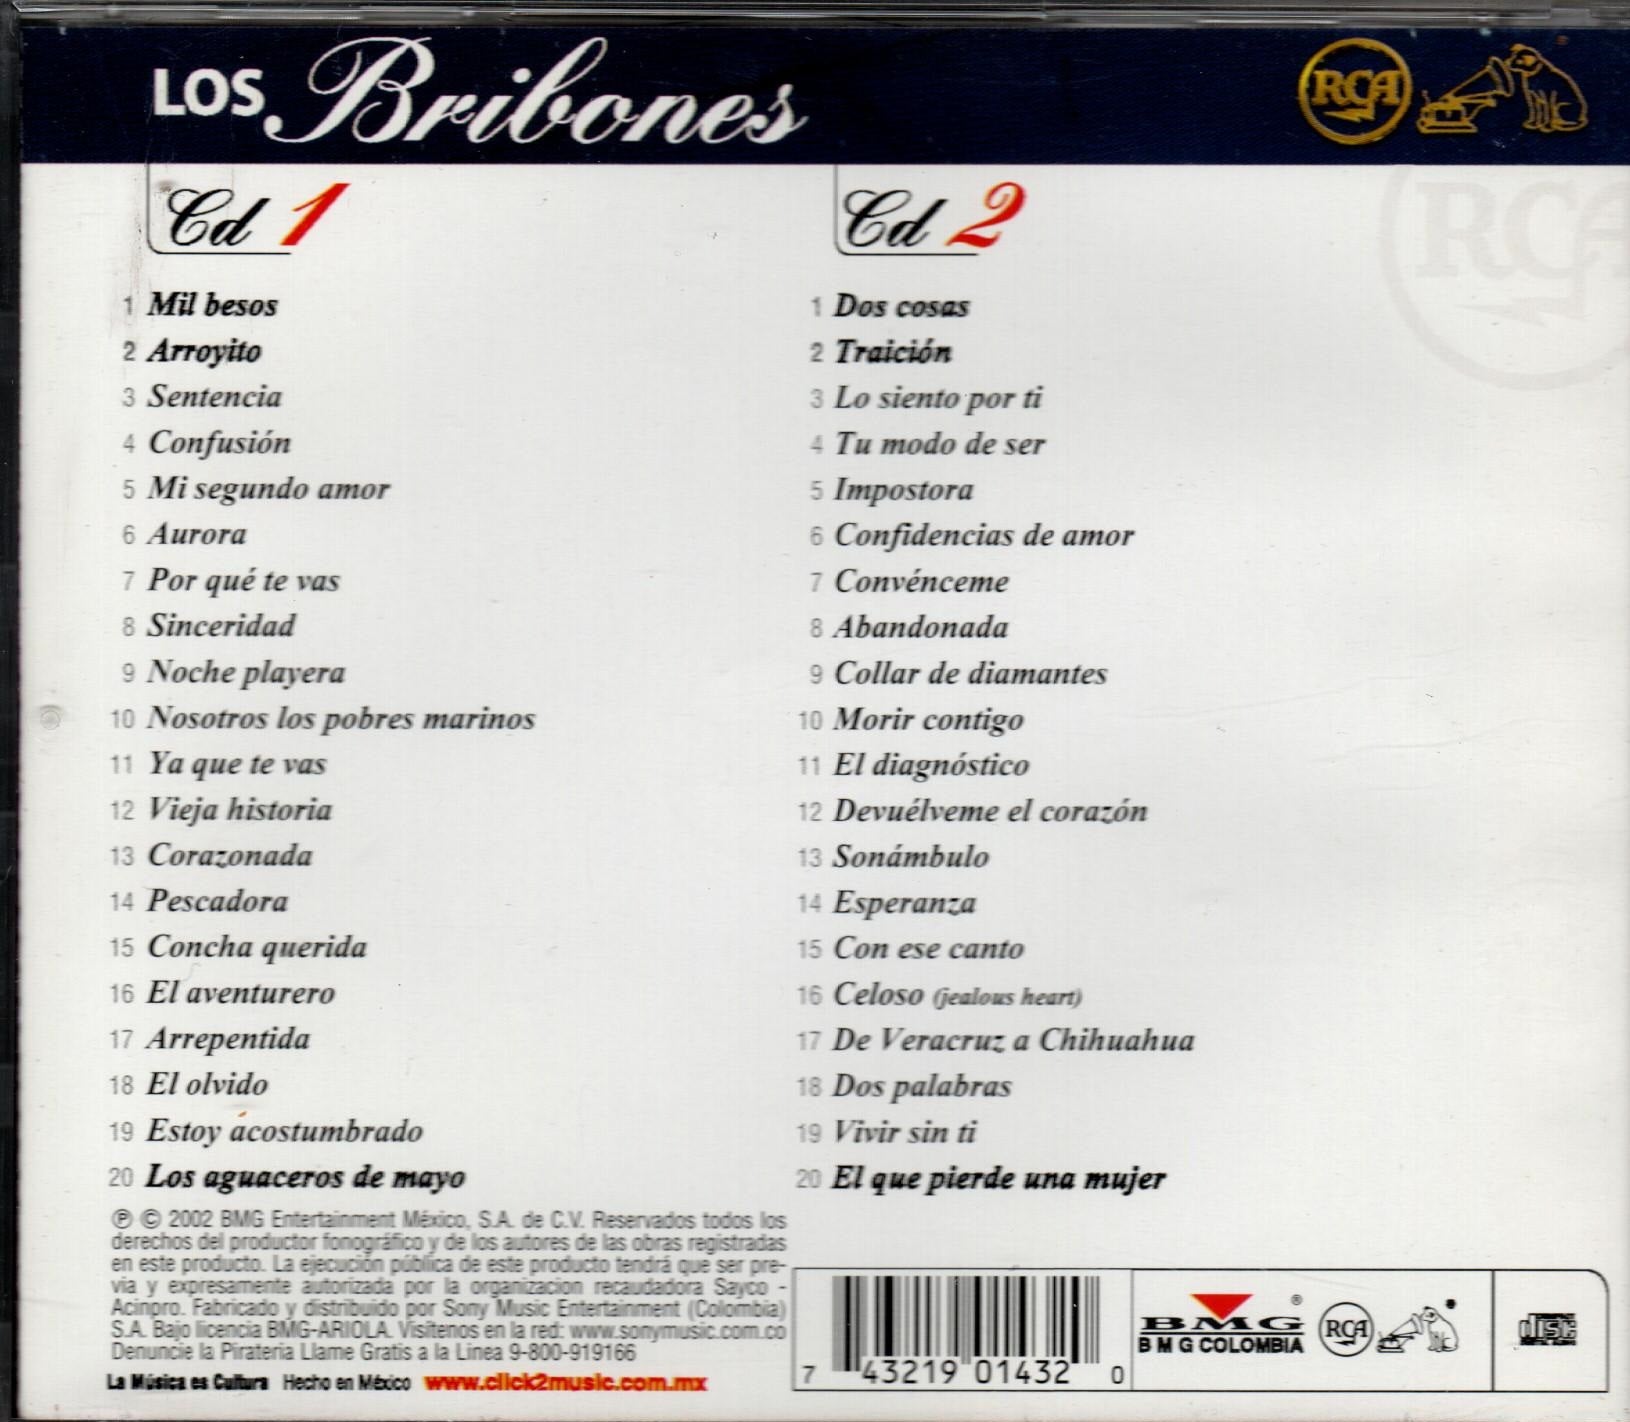 CD x2 RCA 100 AÑOS MUSICA LOS BRIBONES